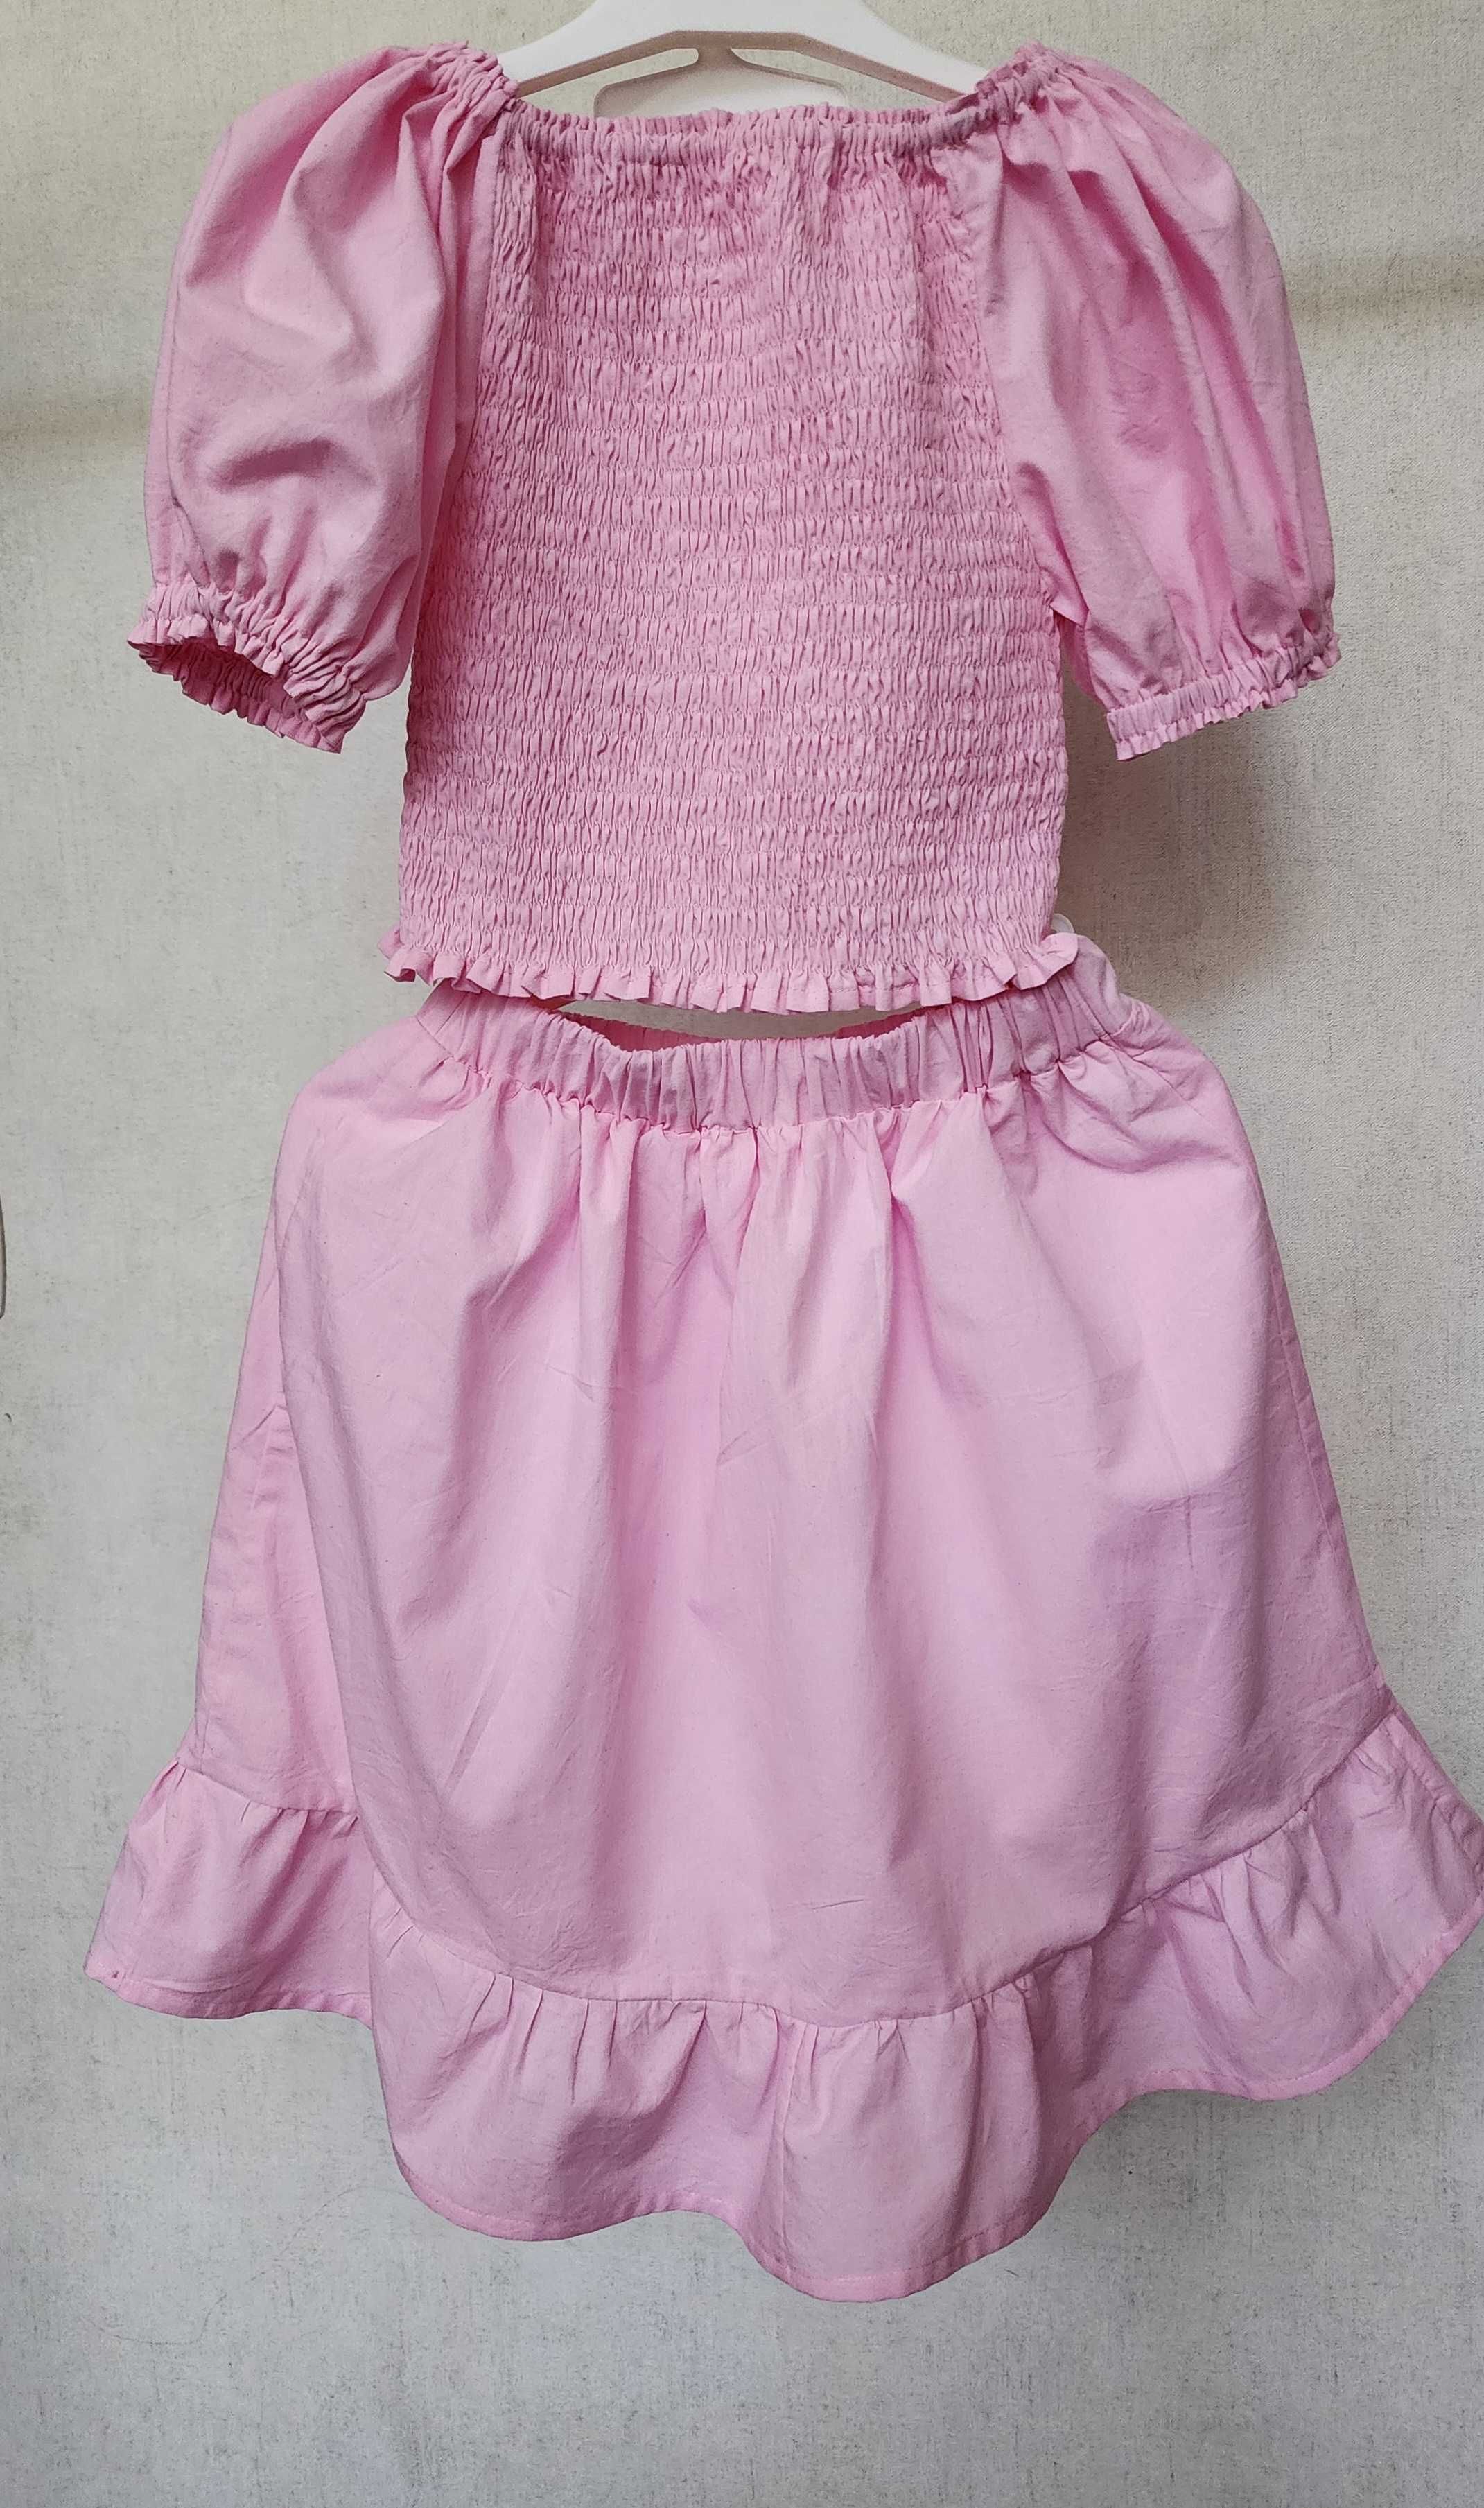 Костюм (юбка с блузкой) розовый для девочки